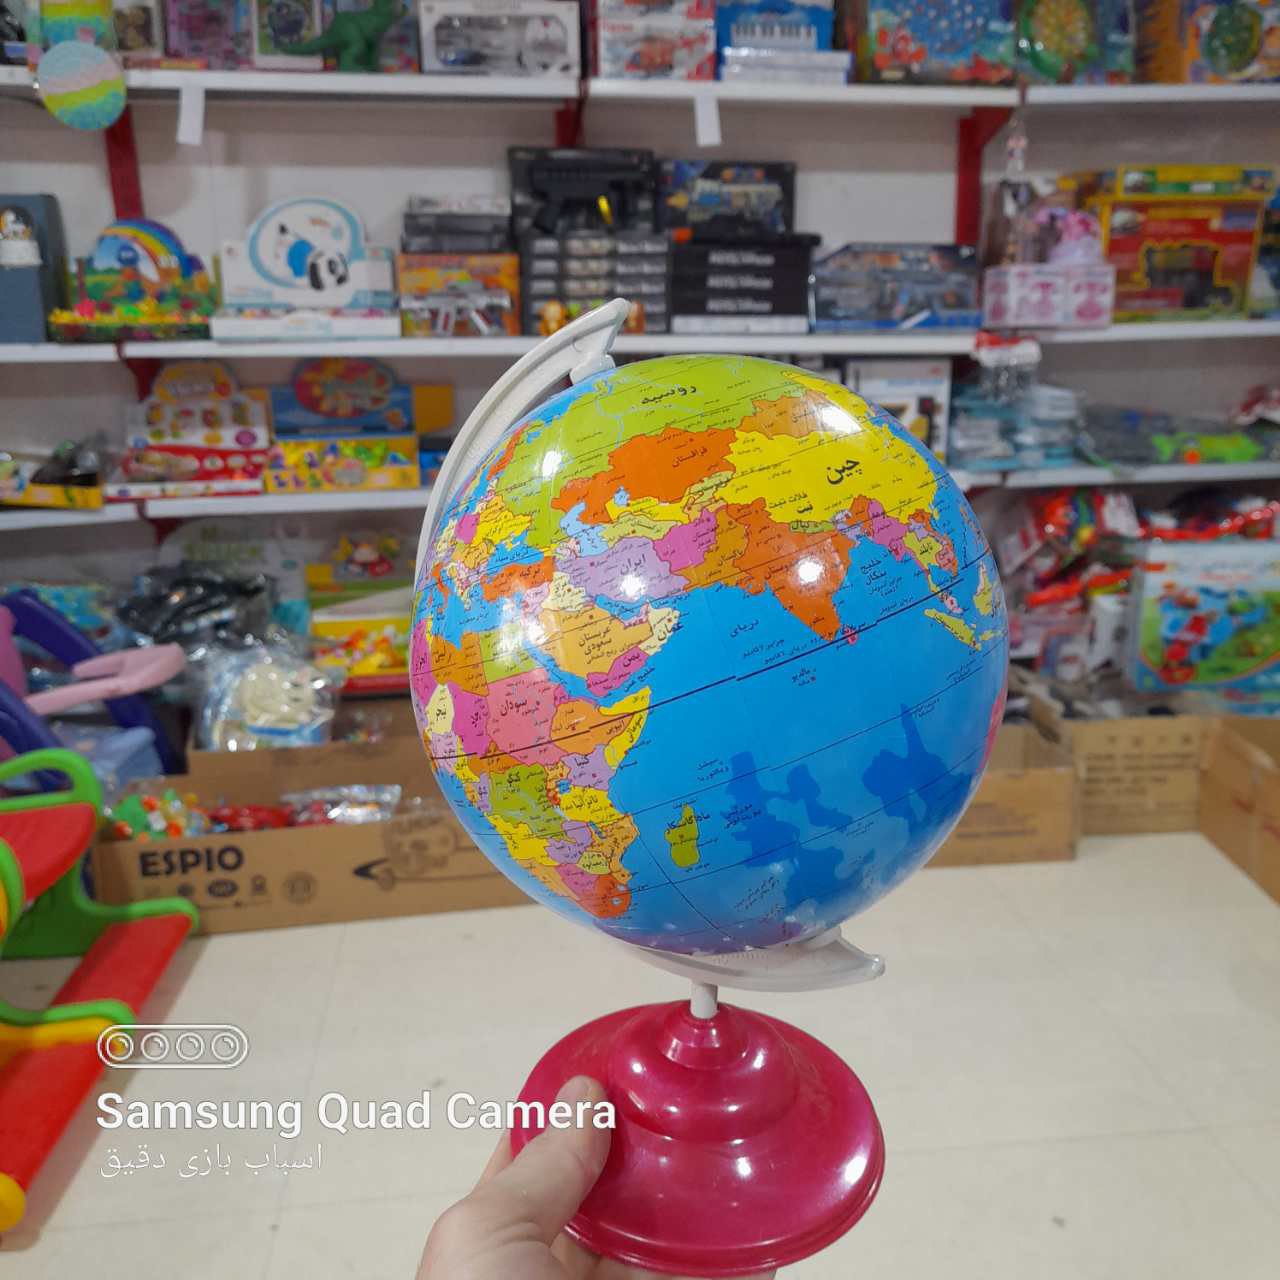  خرید اسباب بازی خرید کره زمین دانش آموزی با قیمت خیلی مناسب